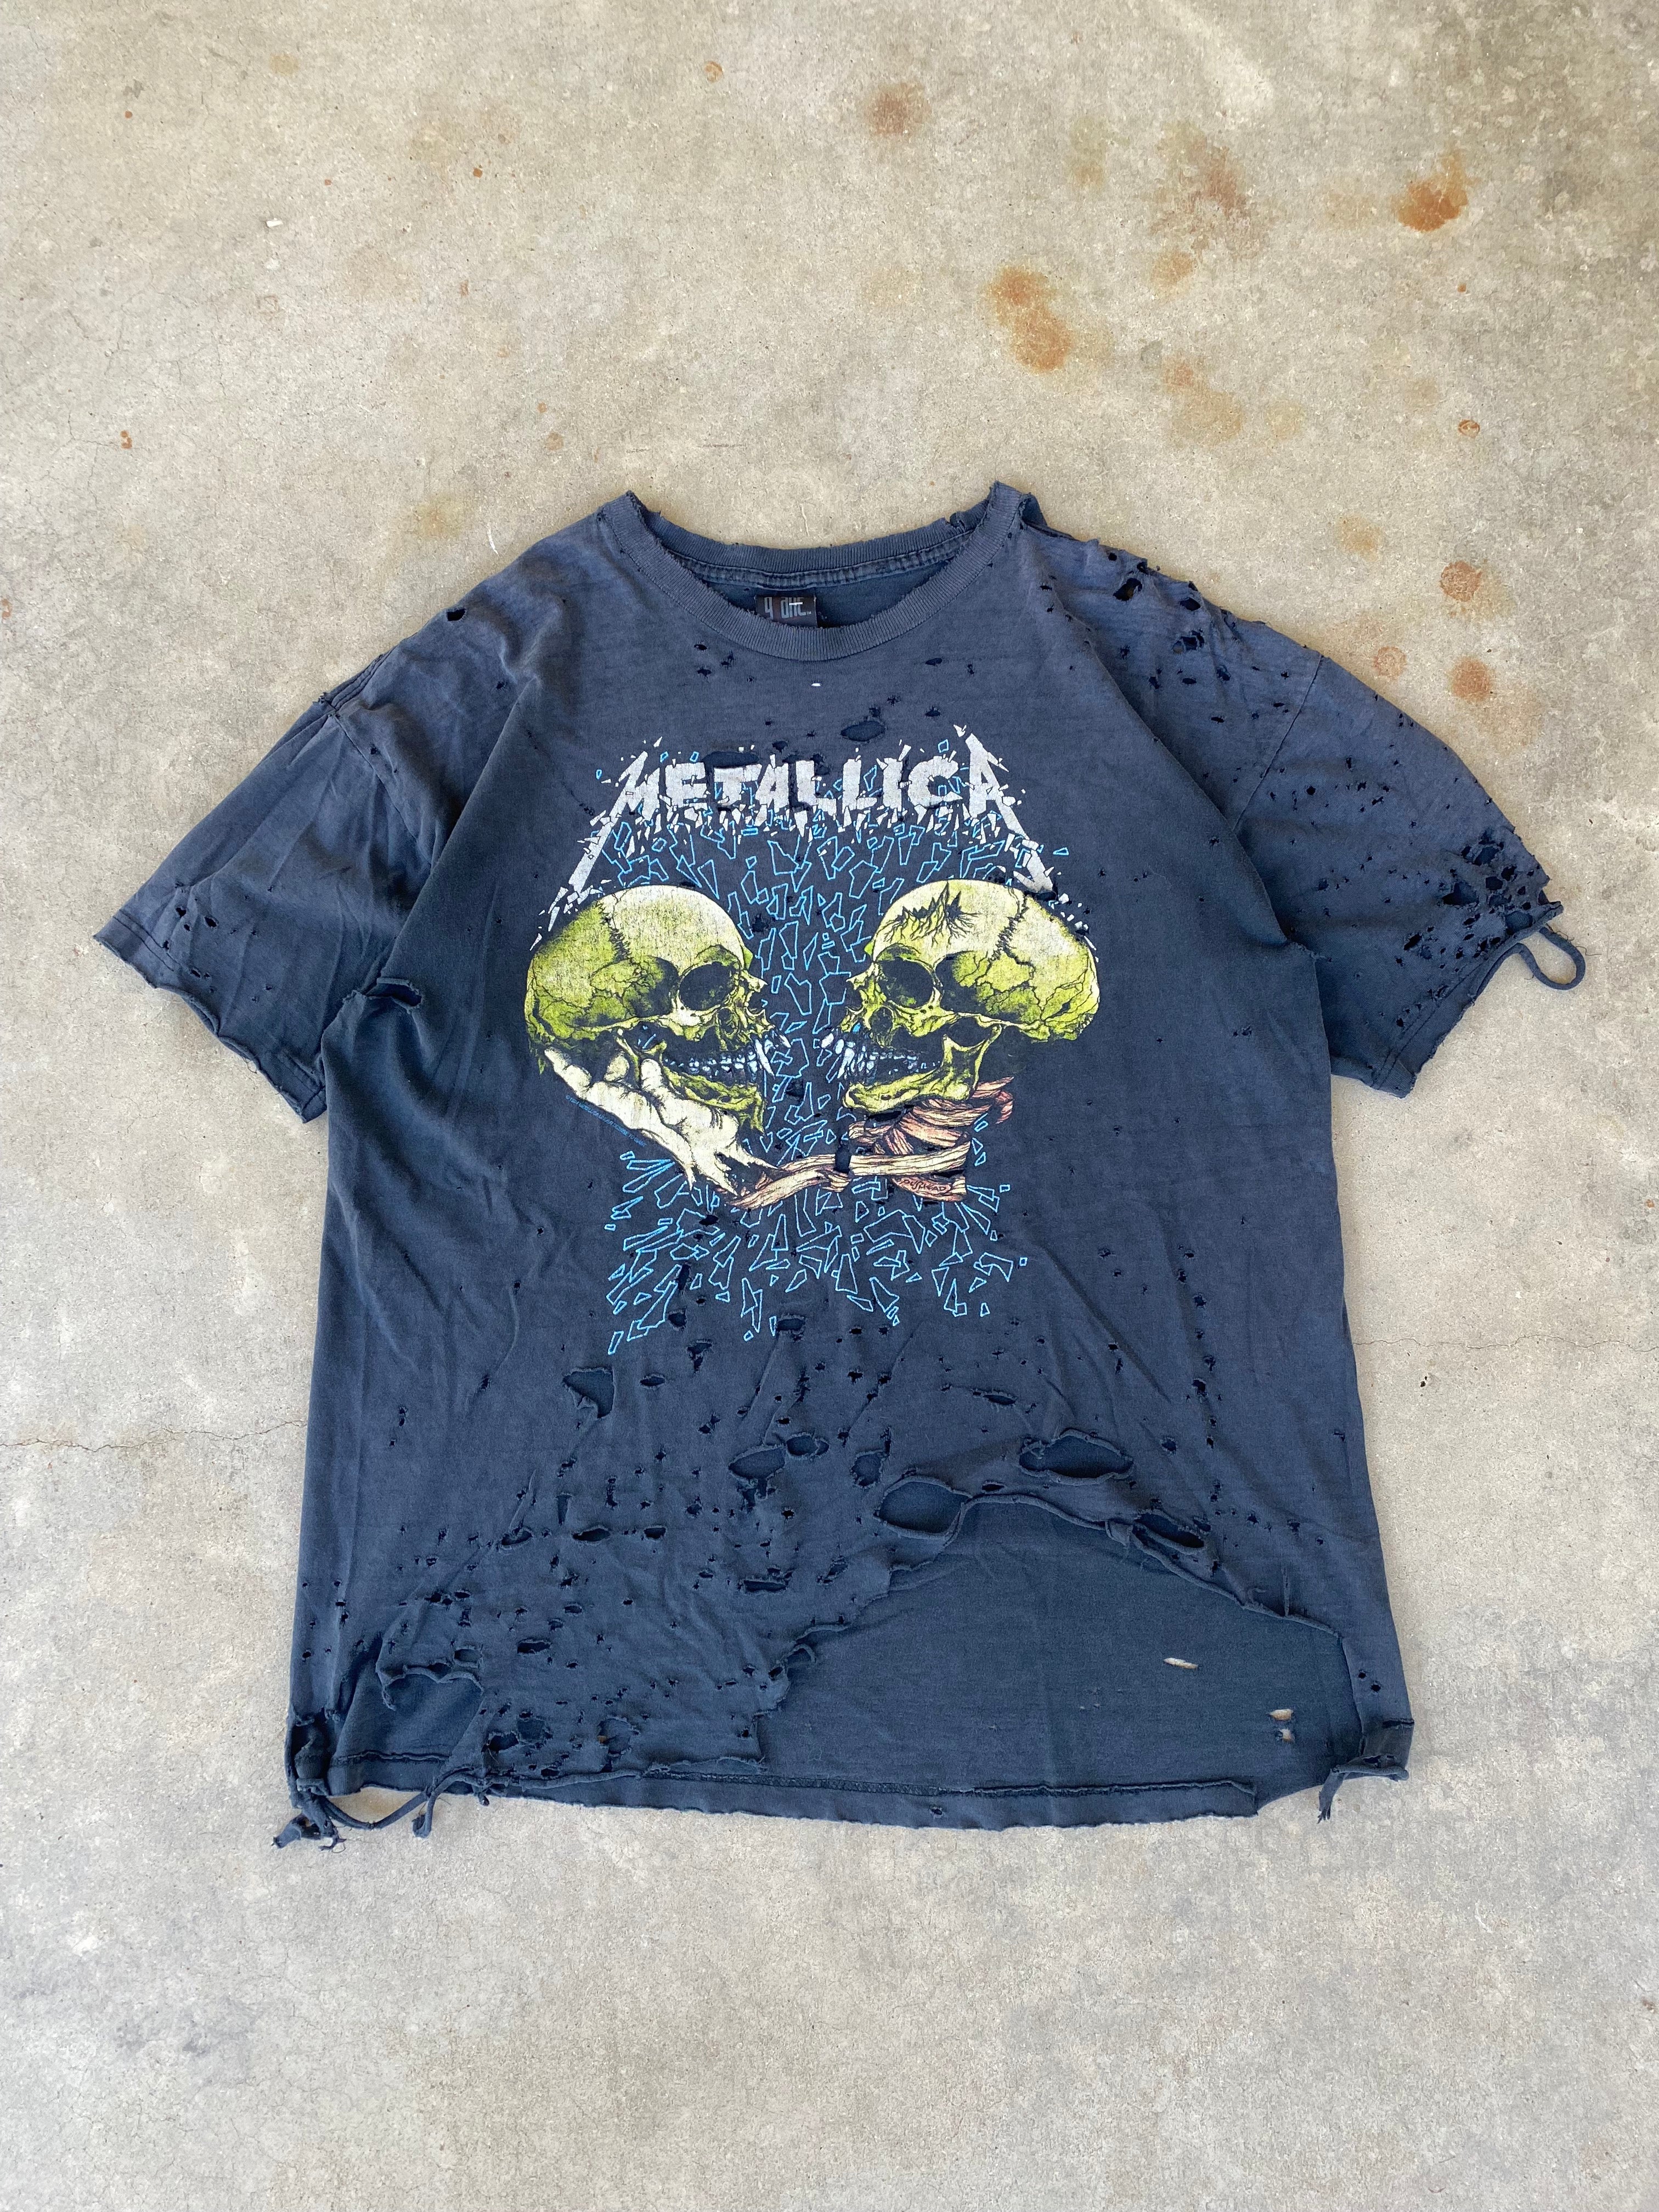 1994 Metallica "Sad but True" Distressed T-Shirt (XL)